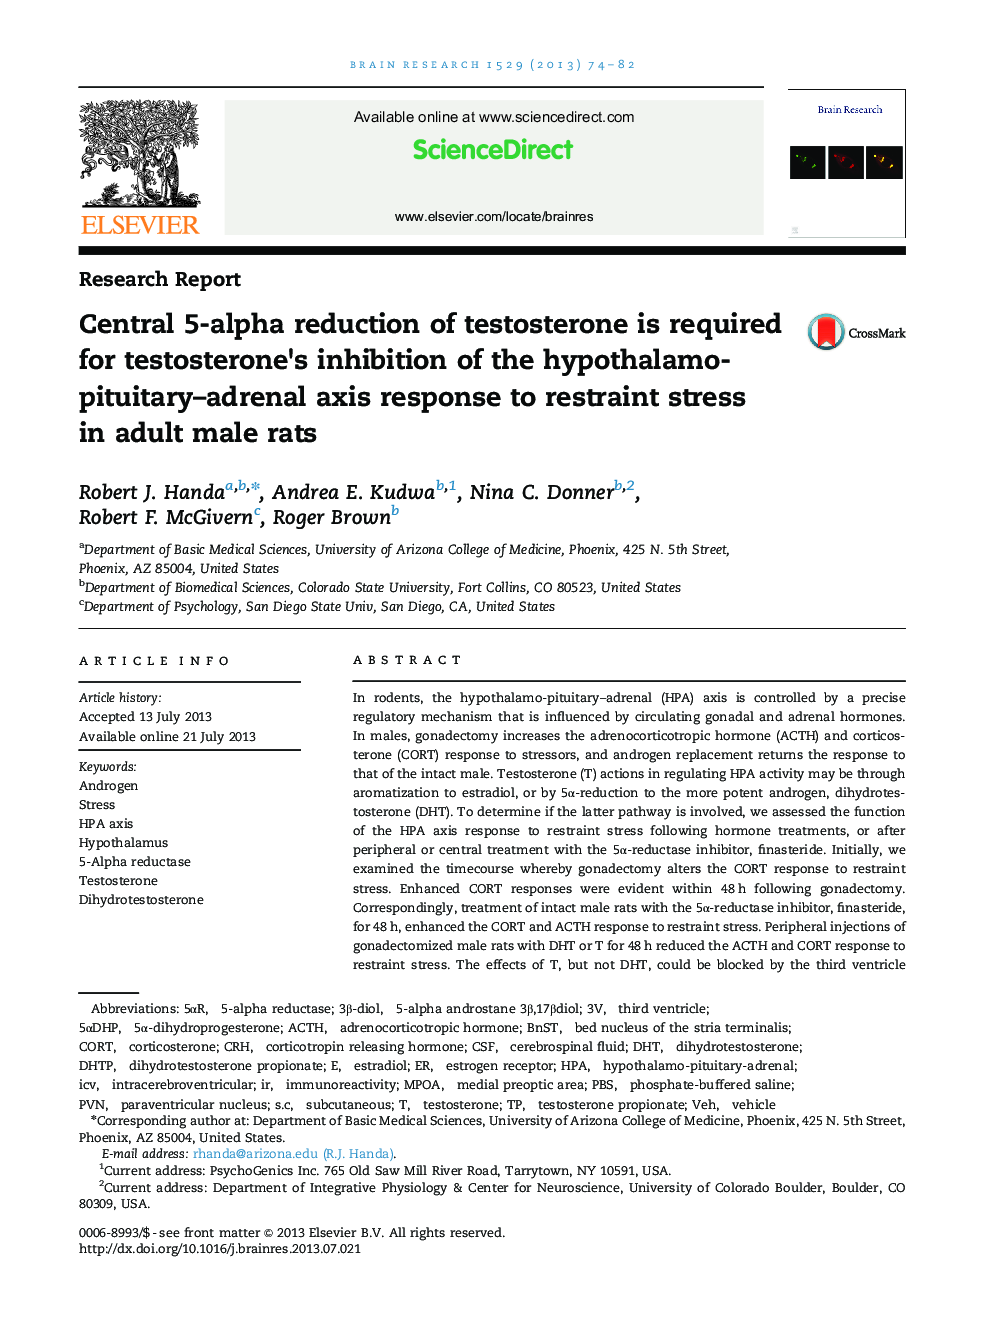 گزارش تحقیق 5-آلفا کاهش تستوسترون در کاهش تستوسترون در پاسخگویی محوری هیپوتالامو-هیپوفیو-آدرنال به استرس محدود کردن در موش های صحرایی نر 